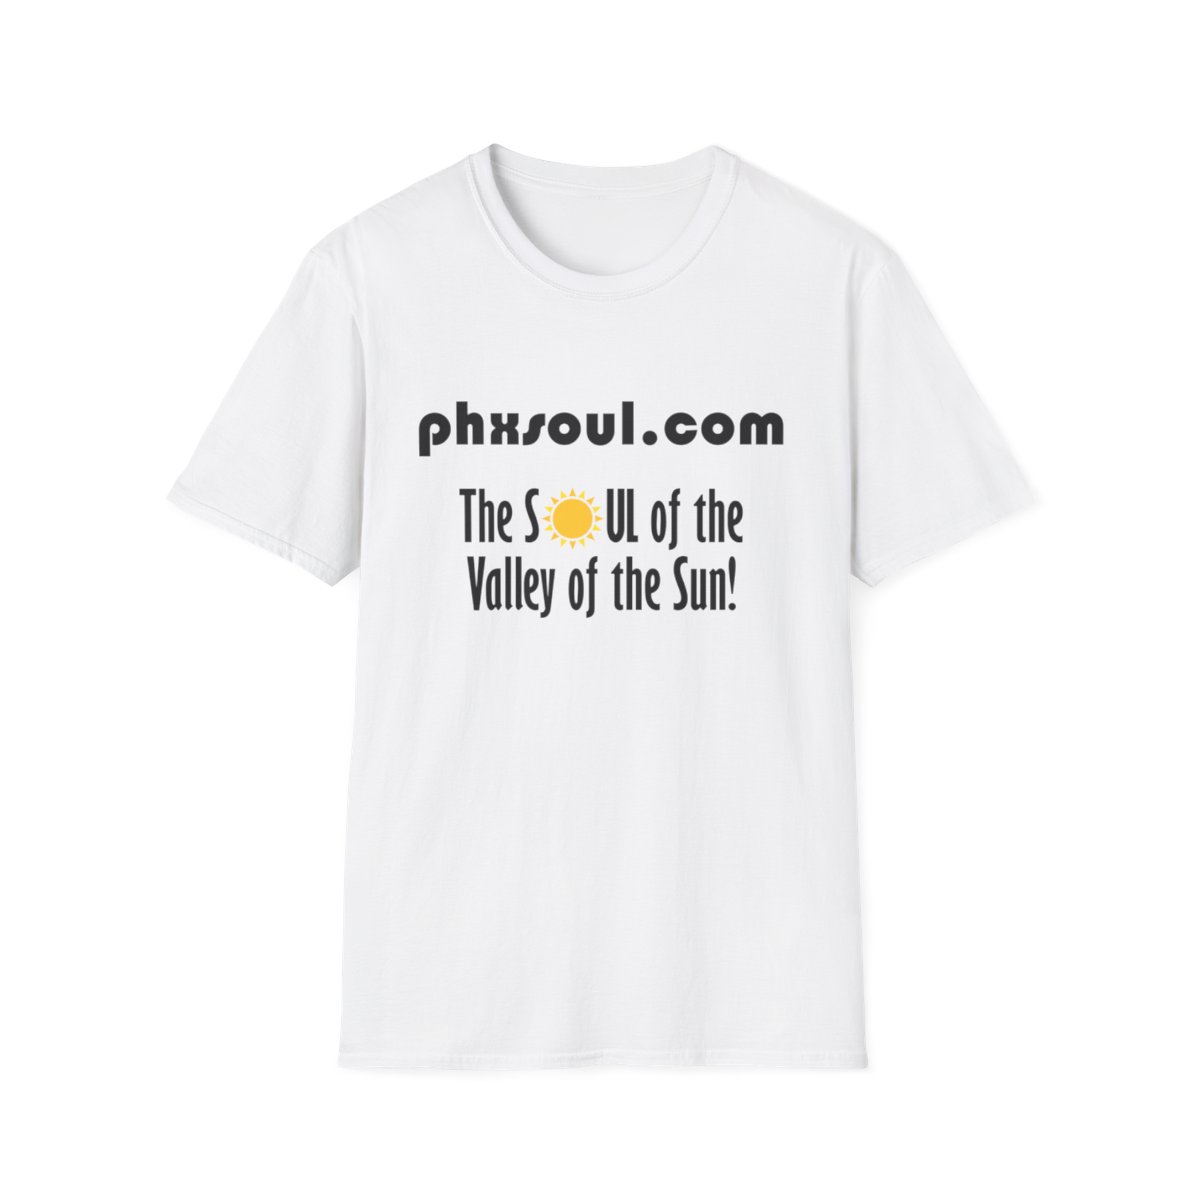 Adult PhxSoul.com Unisex Softstyle White T-Shirt product thumbnail image